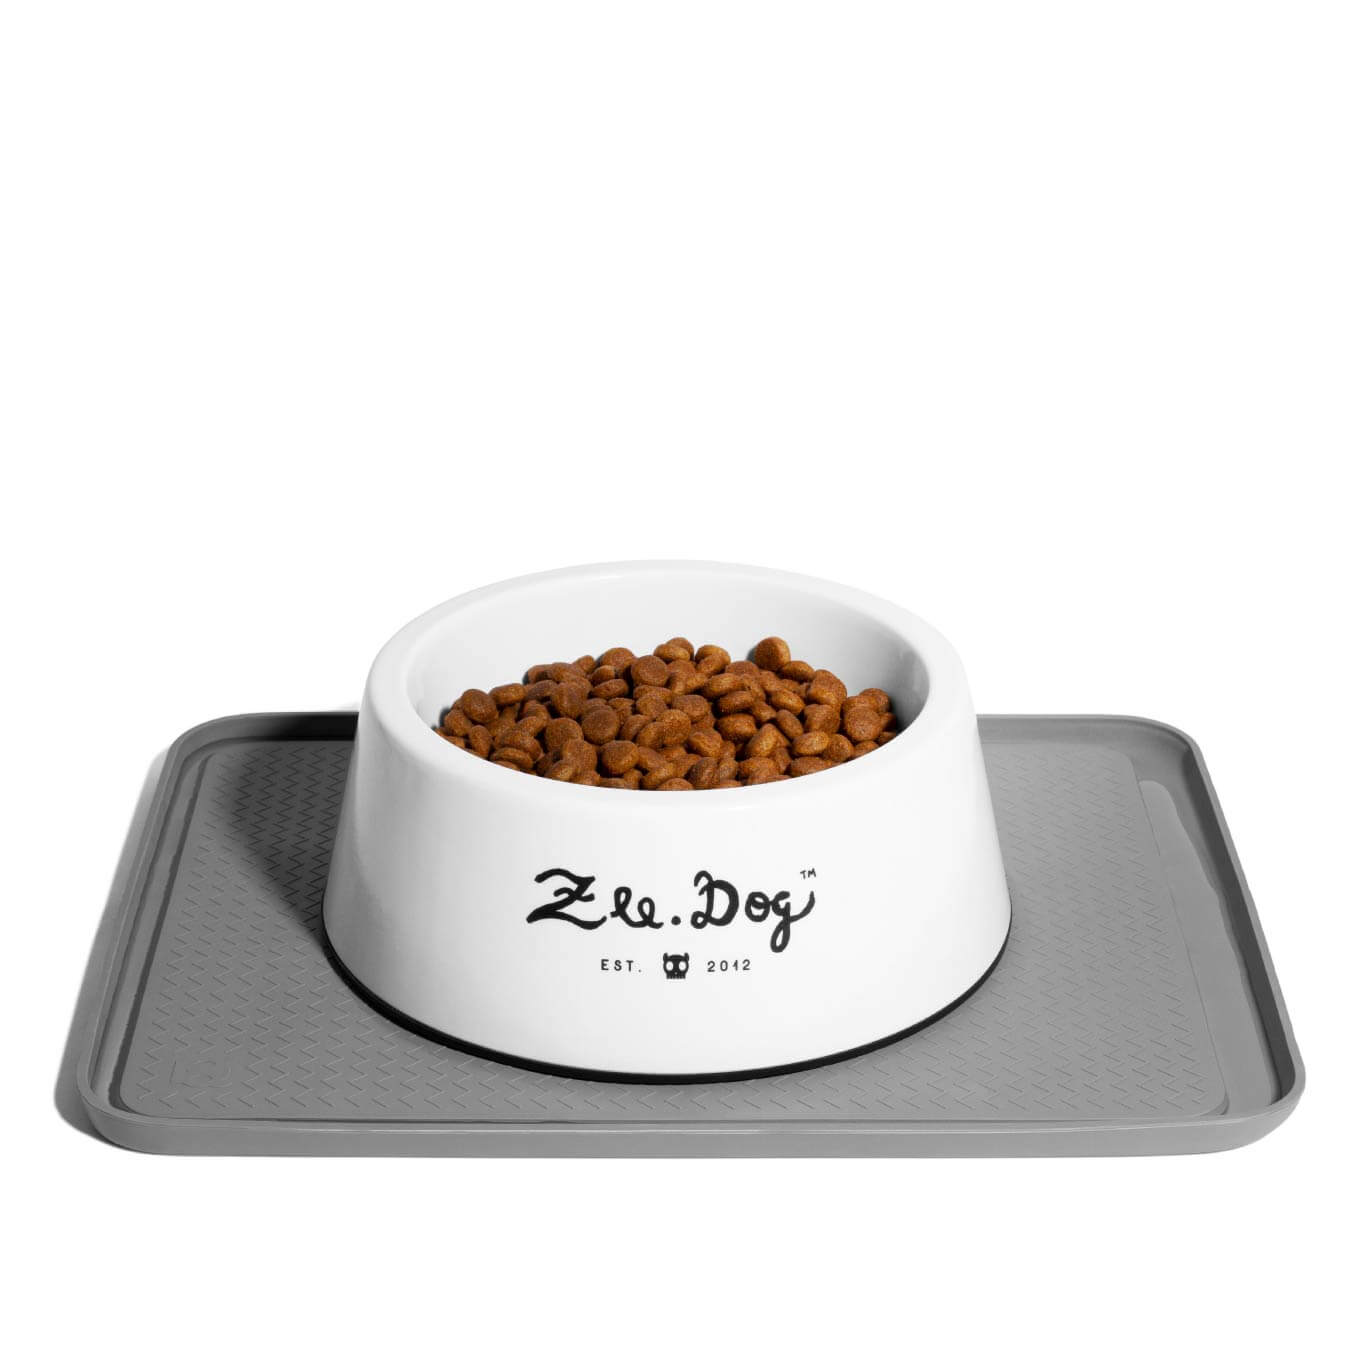 Zee.Mat in Grey - Vanillapup Online Pet Store